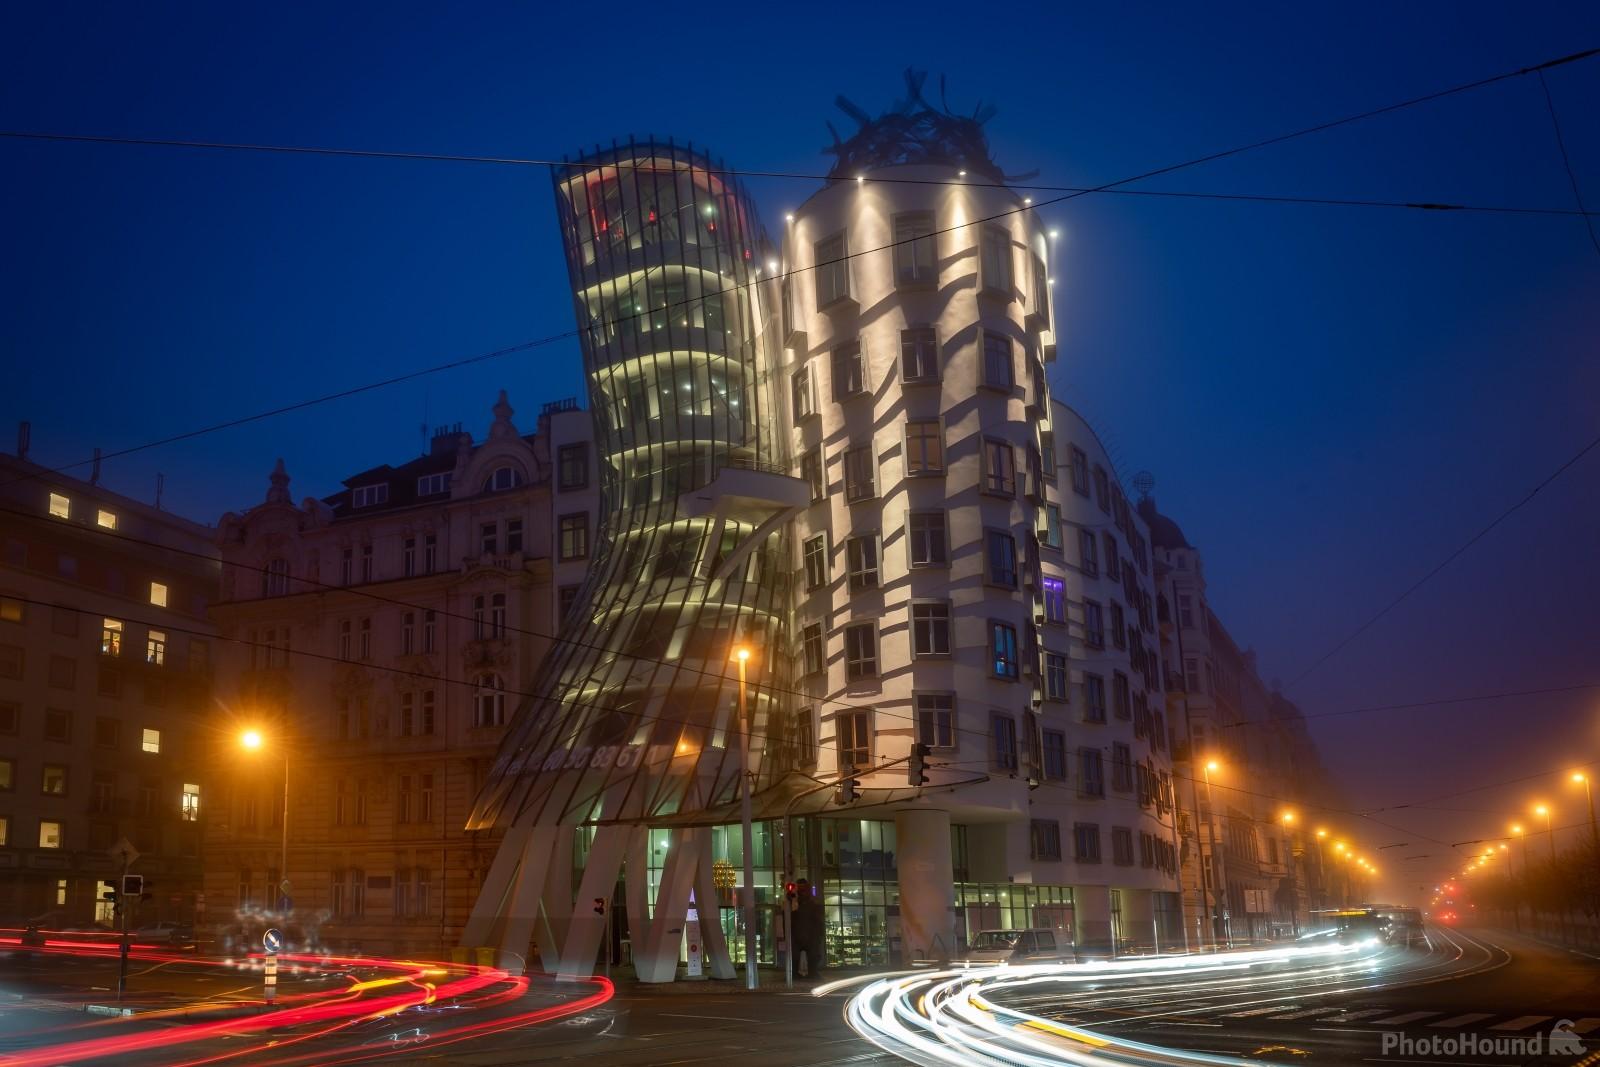 Image of Dancing House in Prague by VOJTa Herout